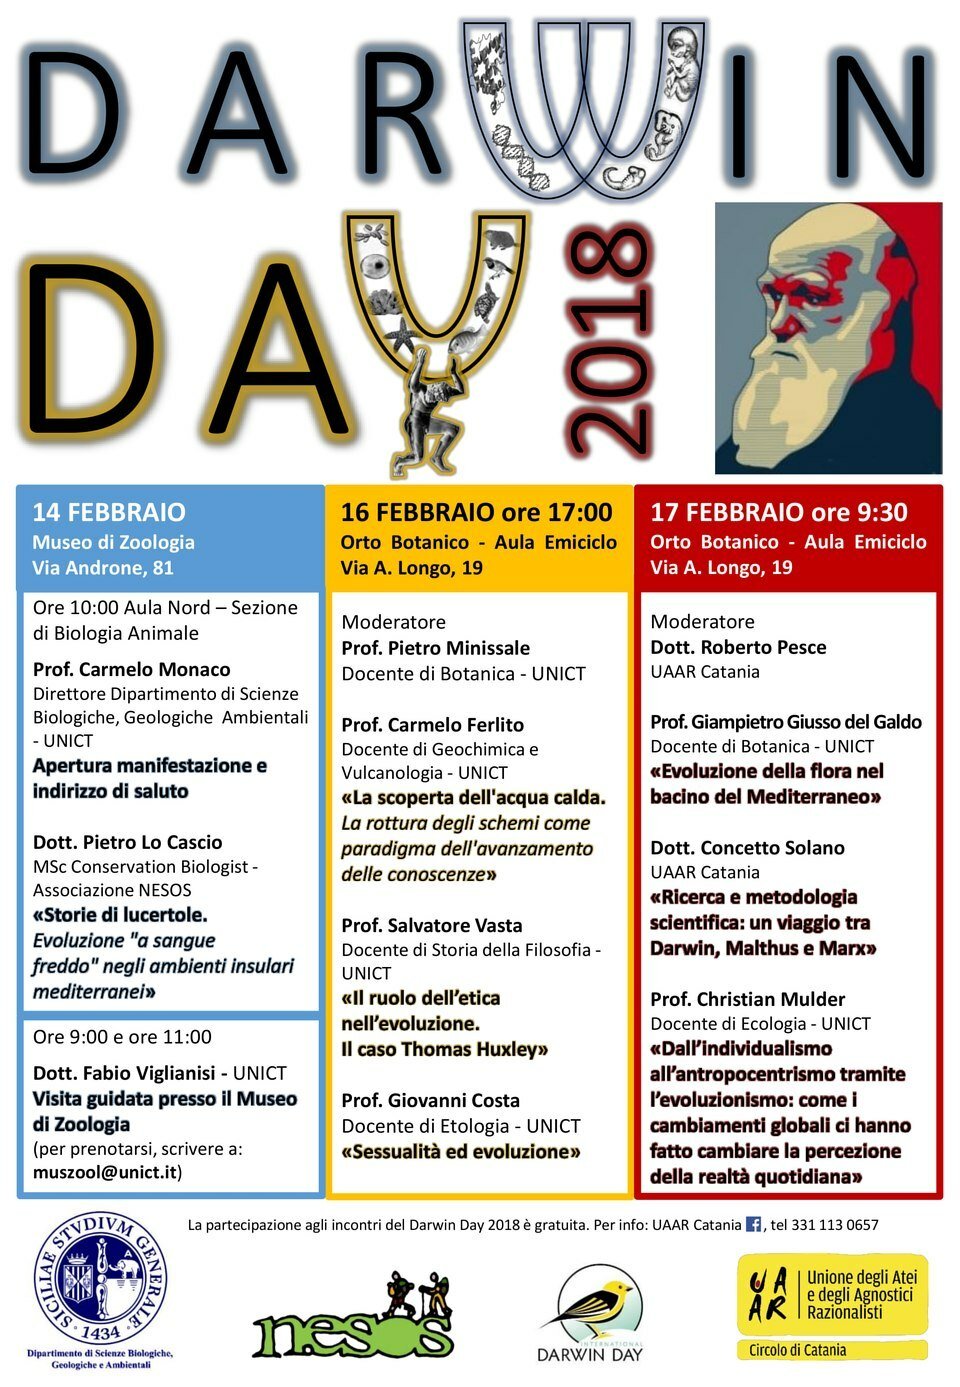 Il calendario eventi del Darwin Day a Catania